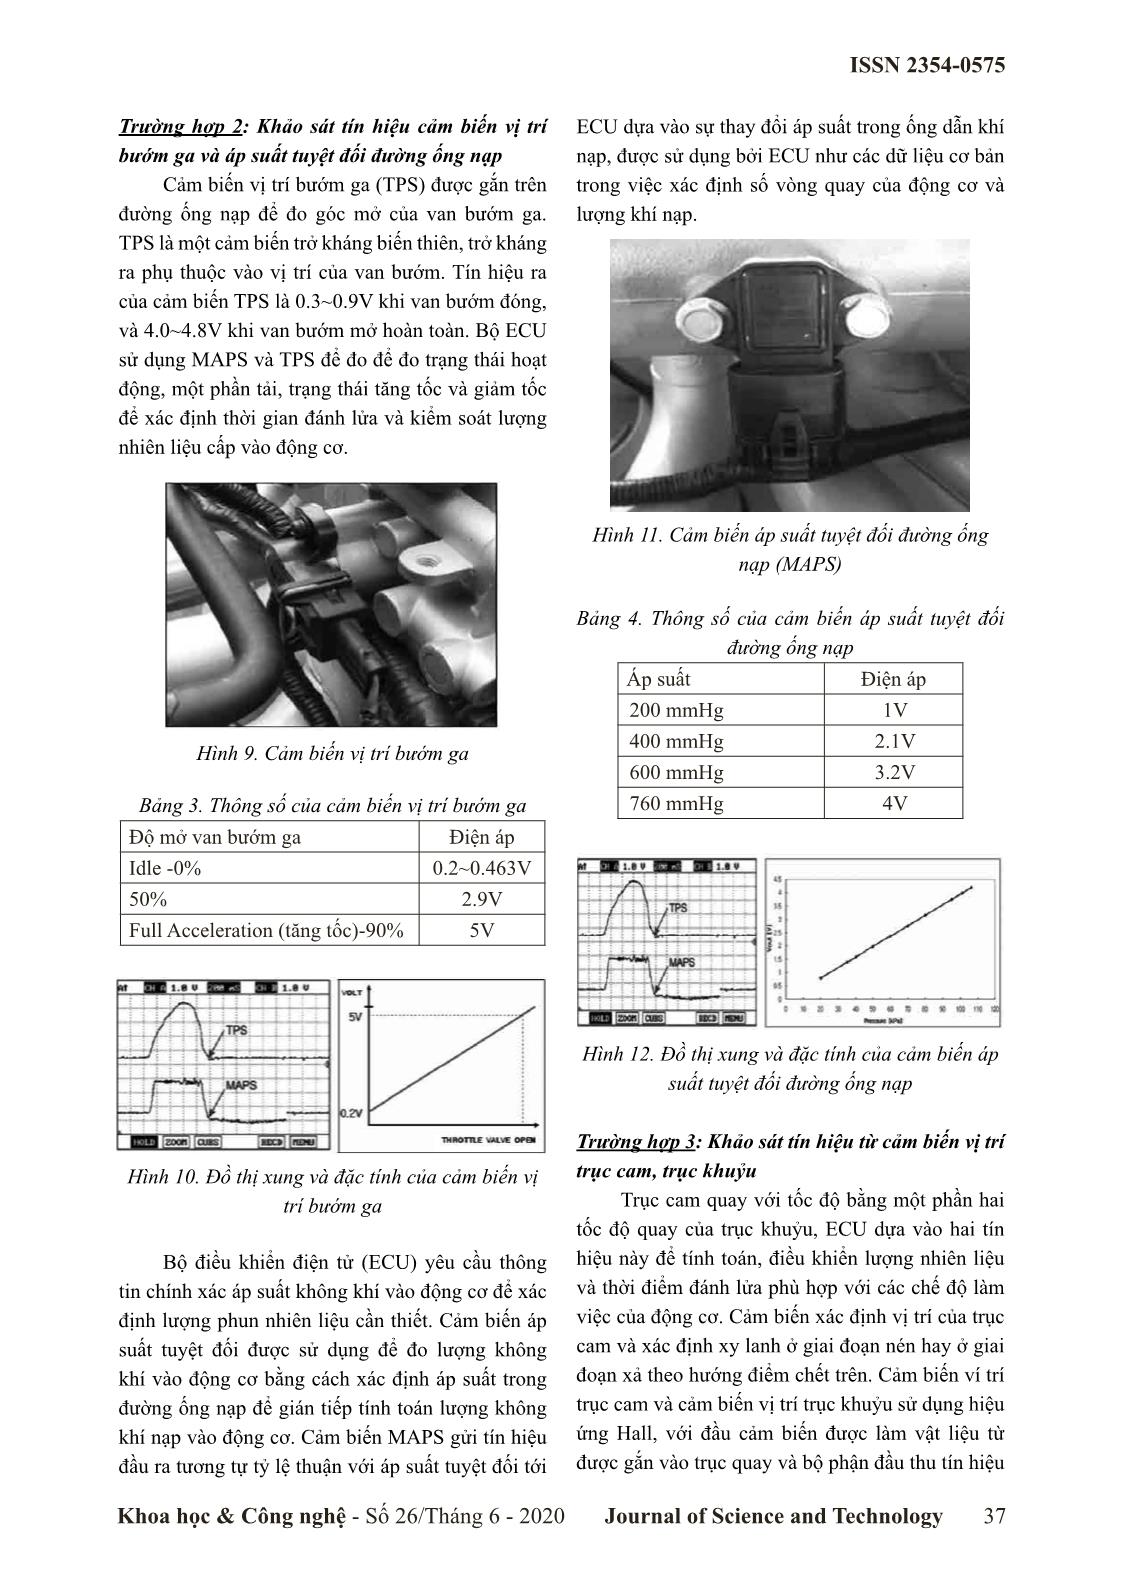 Ứng dụng thiết bị thu thập dữ liệu đa kênh DEWE 2600 khảo sát tín hiệu từ cảm biến trên động cơ đốt trong trang 4